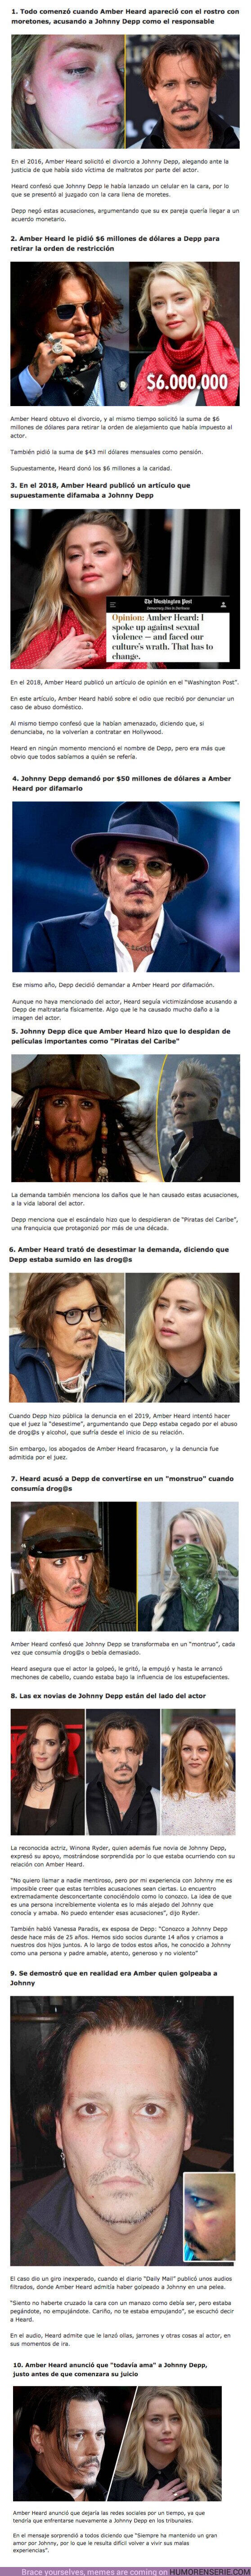 96000 - GALERÍA: 10 Datos para entender el juicio entre Amber Heard y Johnny Depp